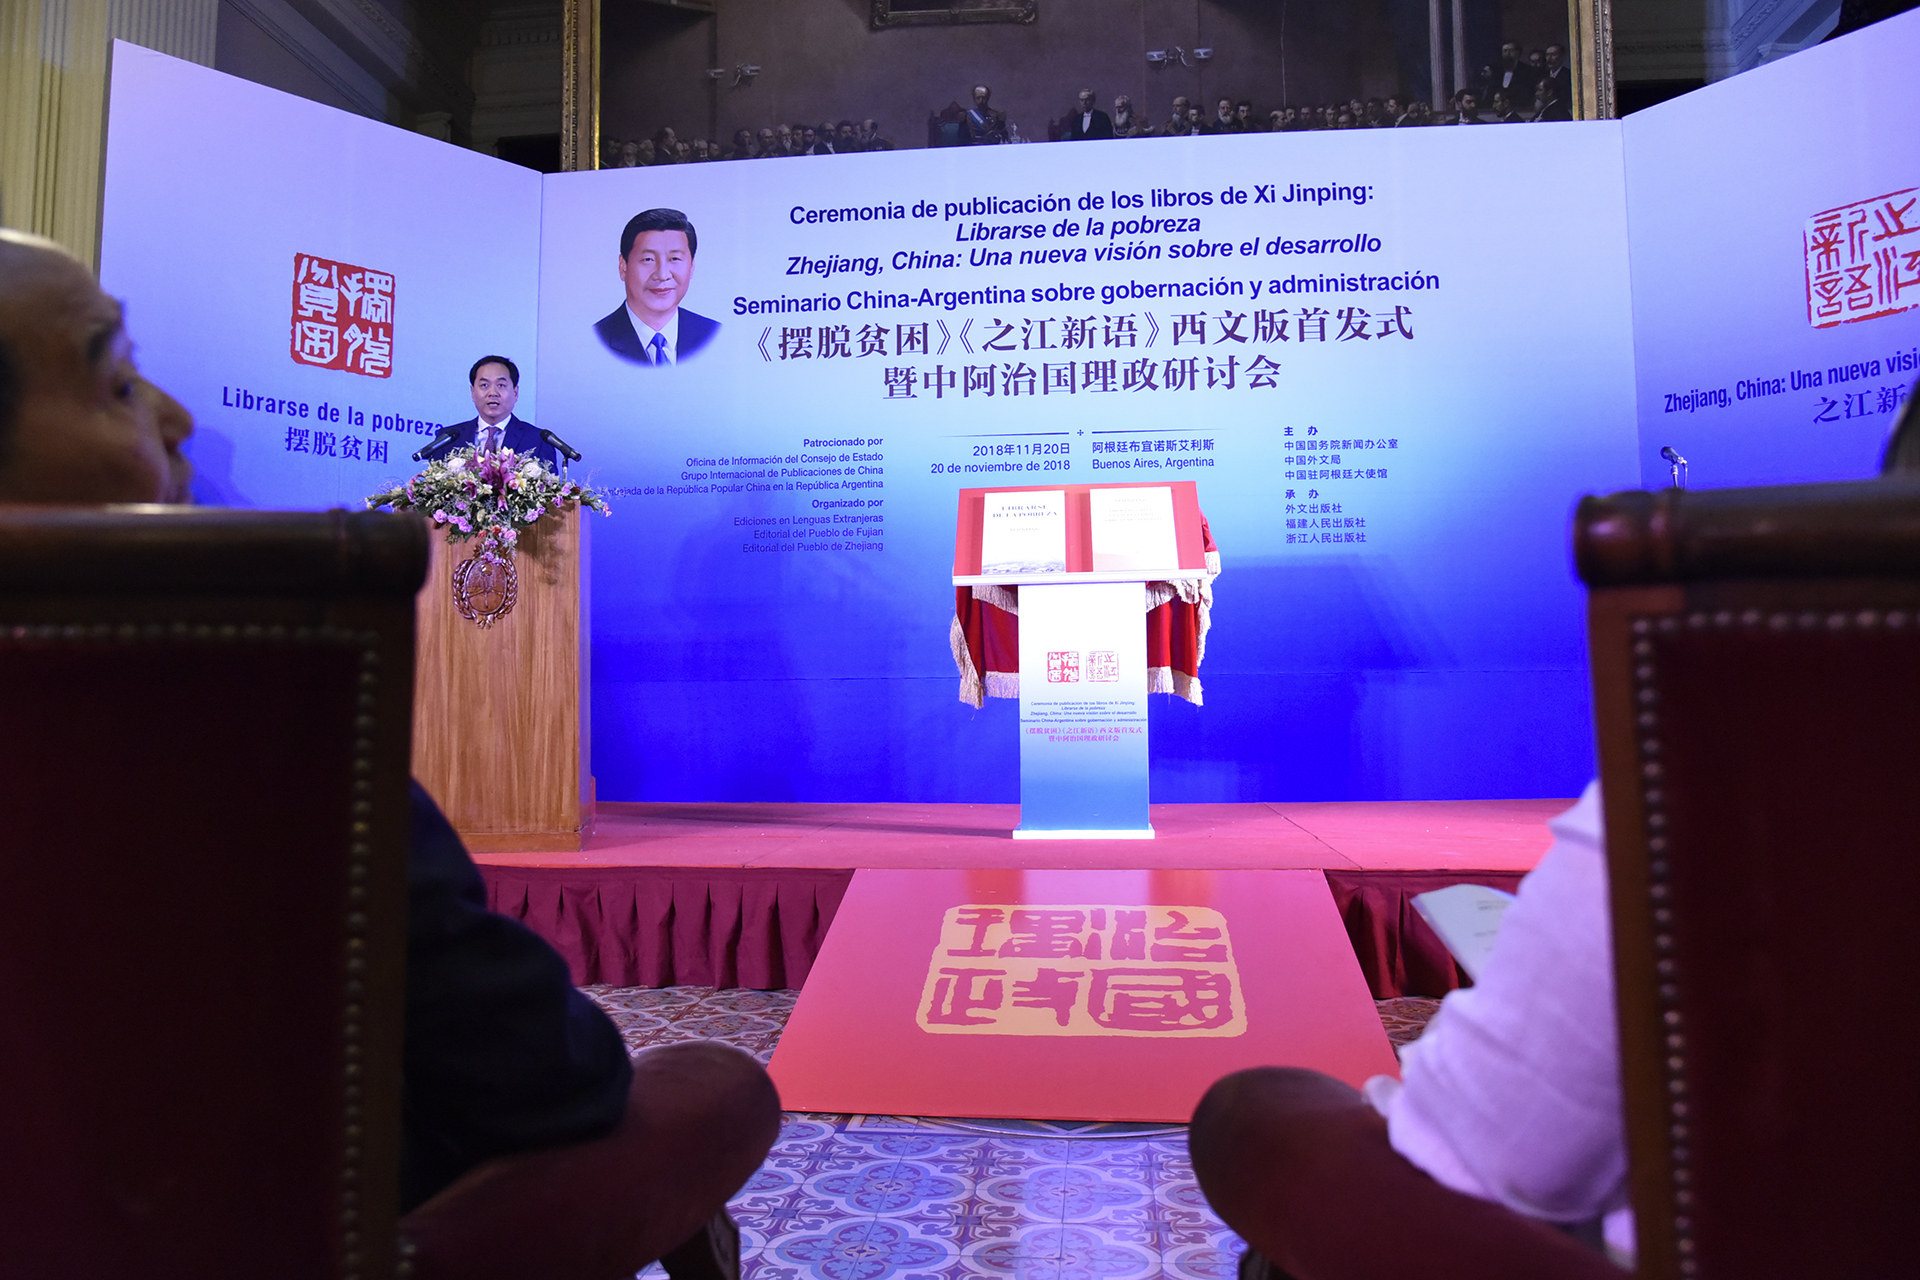 Se presentaron dos libros del Presidente de la República Popular China, Xi Jinping, traducidos al español